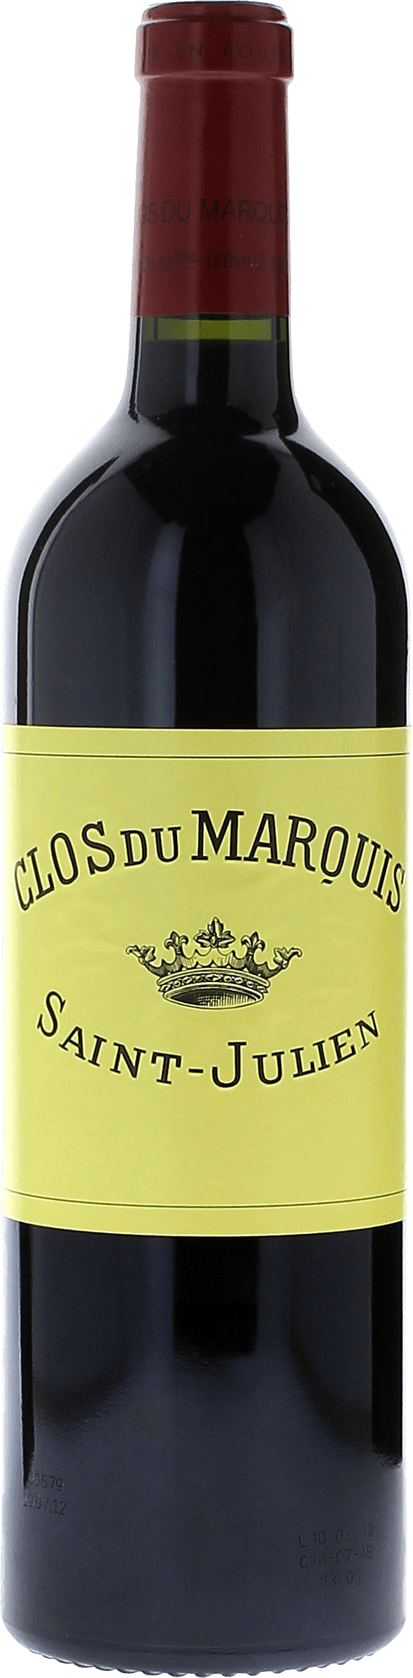 Clos du marquis 1995 2me vin de LEOVILLE LAS CASES Saint-Julien, Bordeaux rouge